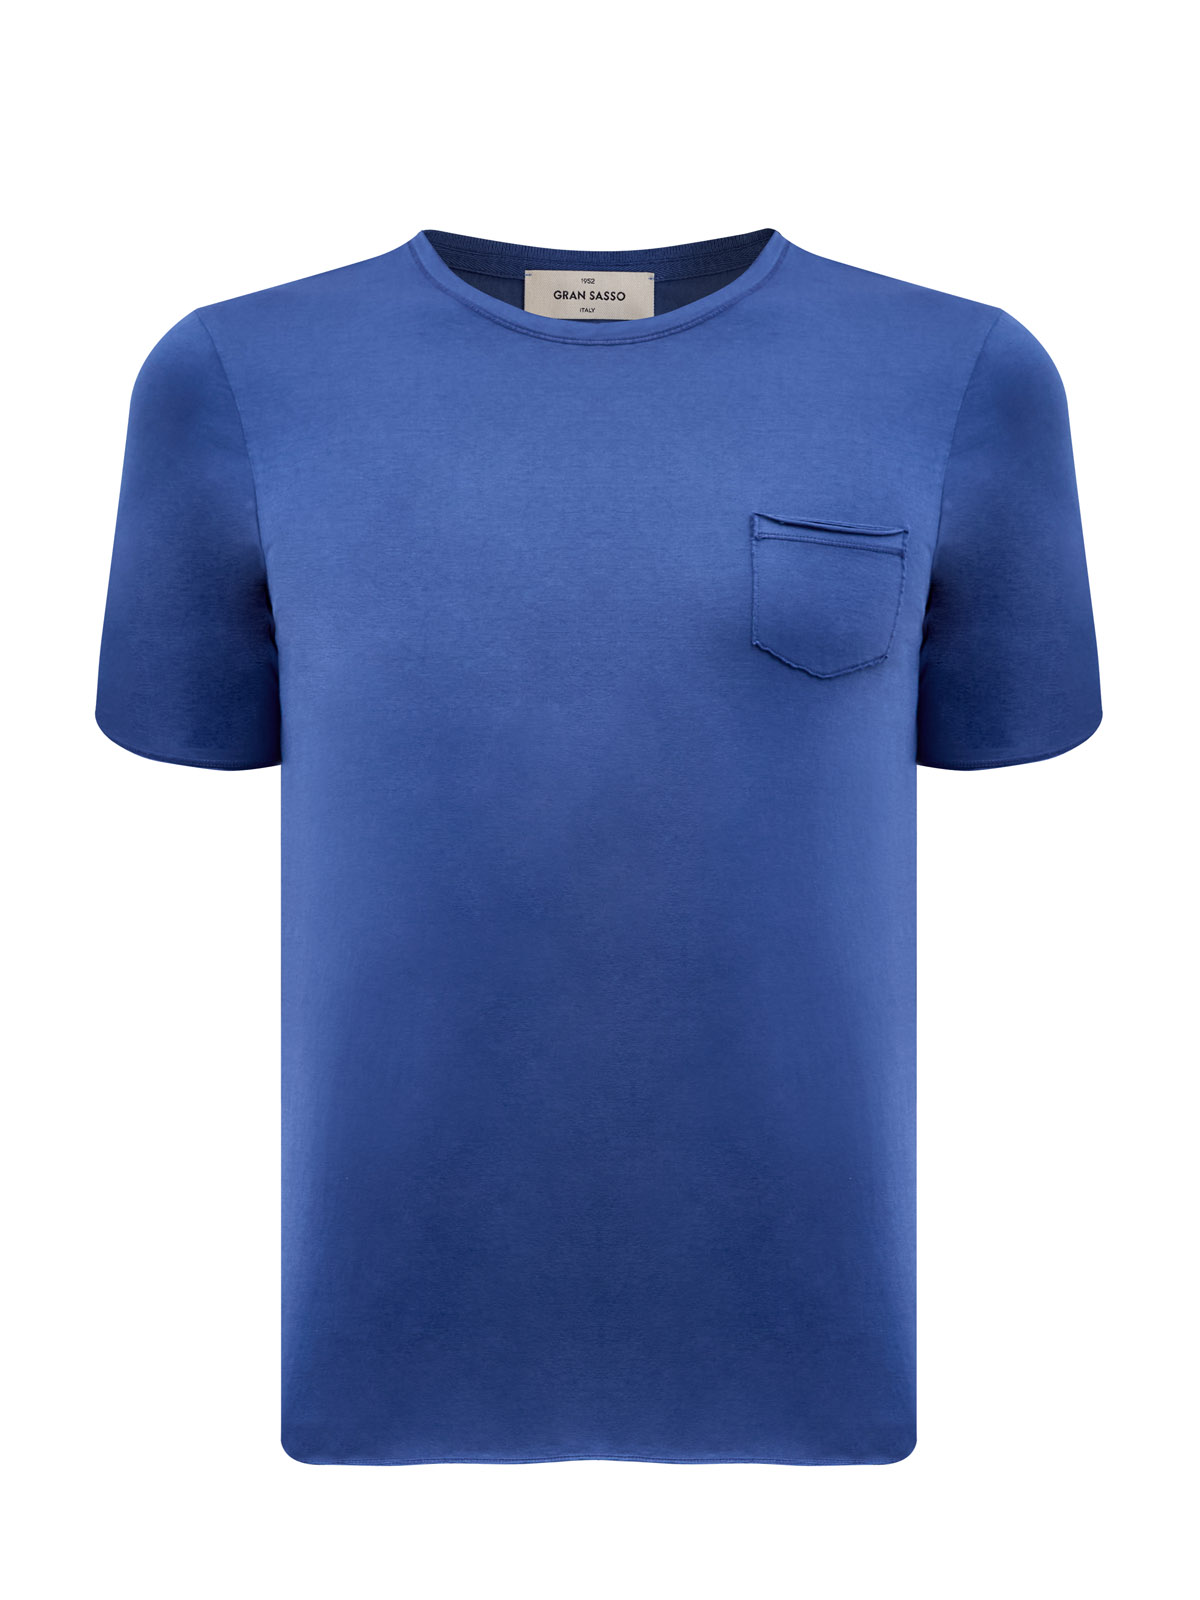 Хлопковая футболка из тонкого джерси с фирменным патчем GRAN SASSO, цвет синий, размер 50;52;54;56;58